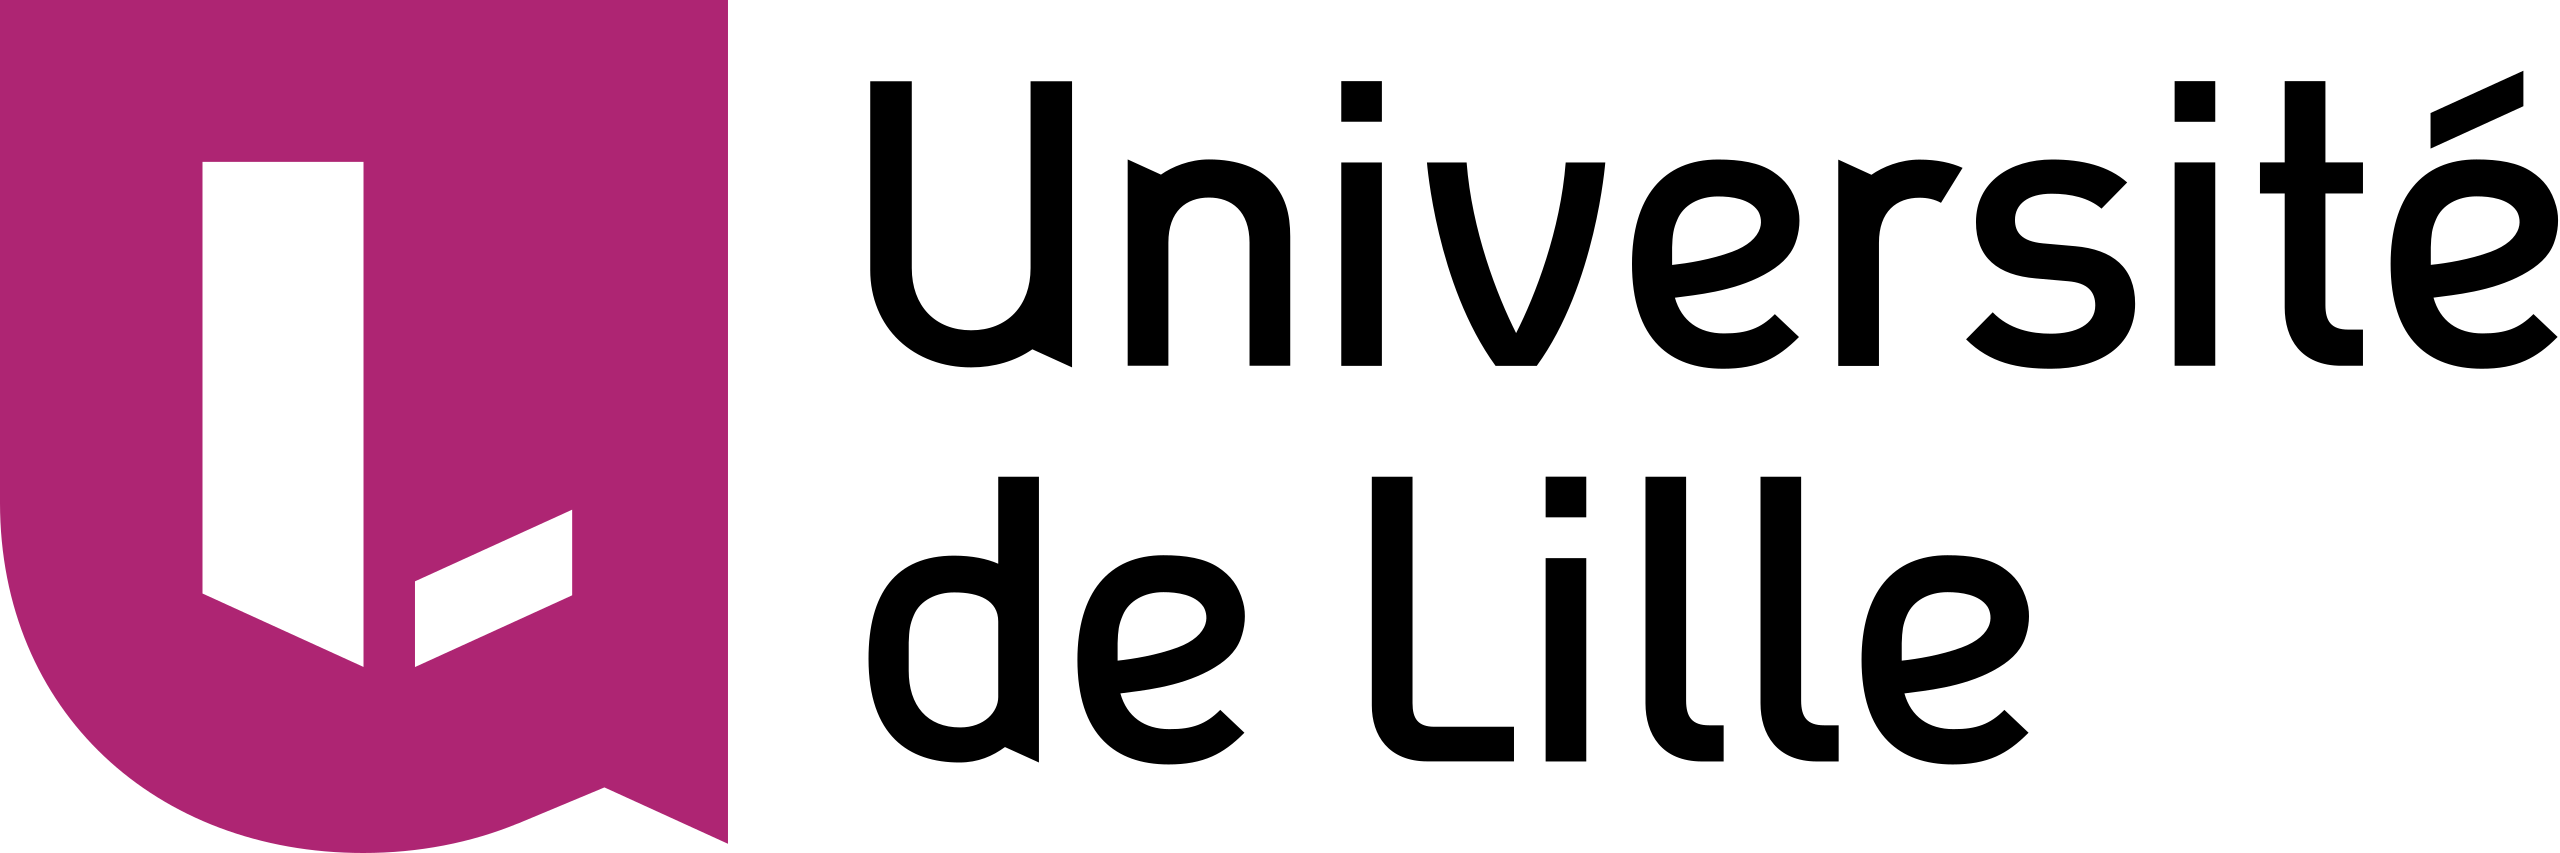 logo université lille